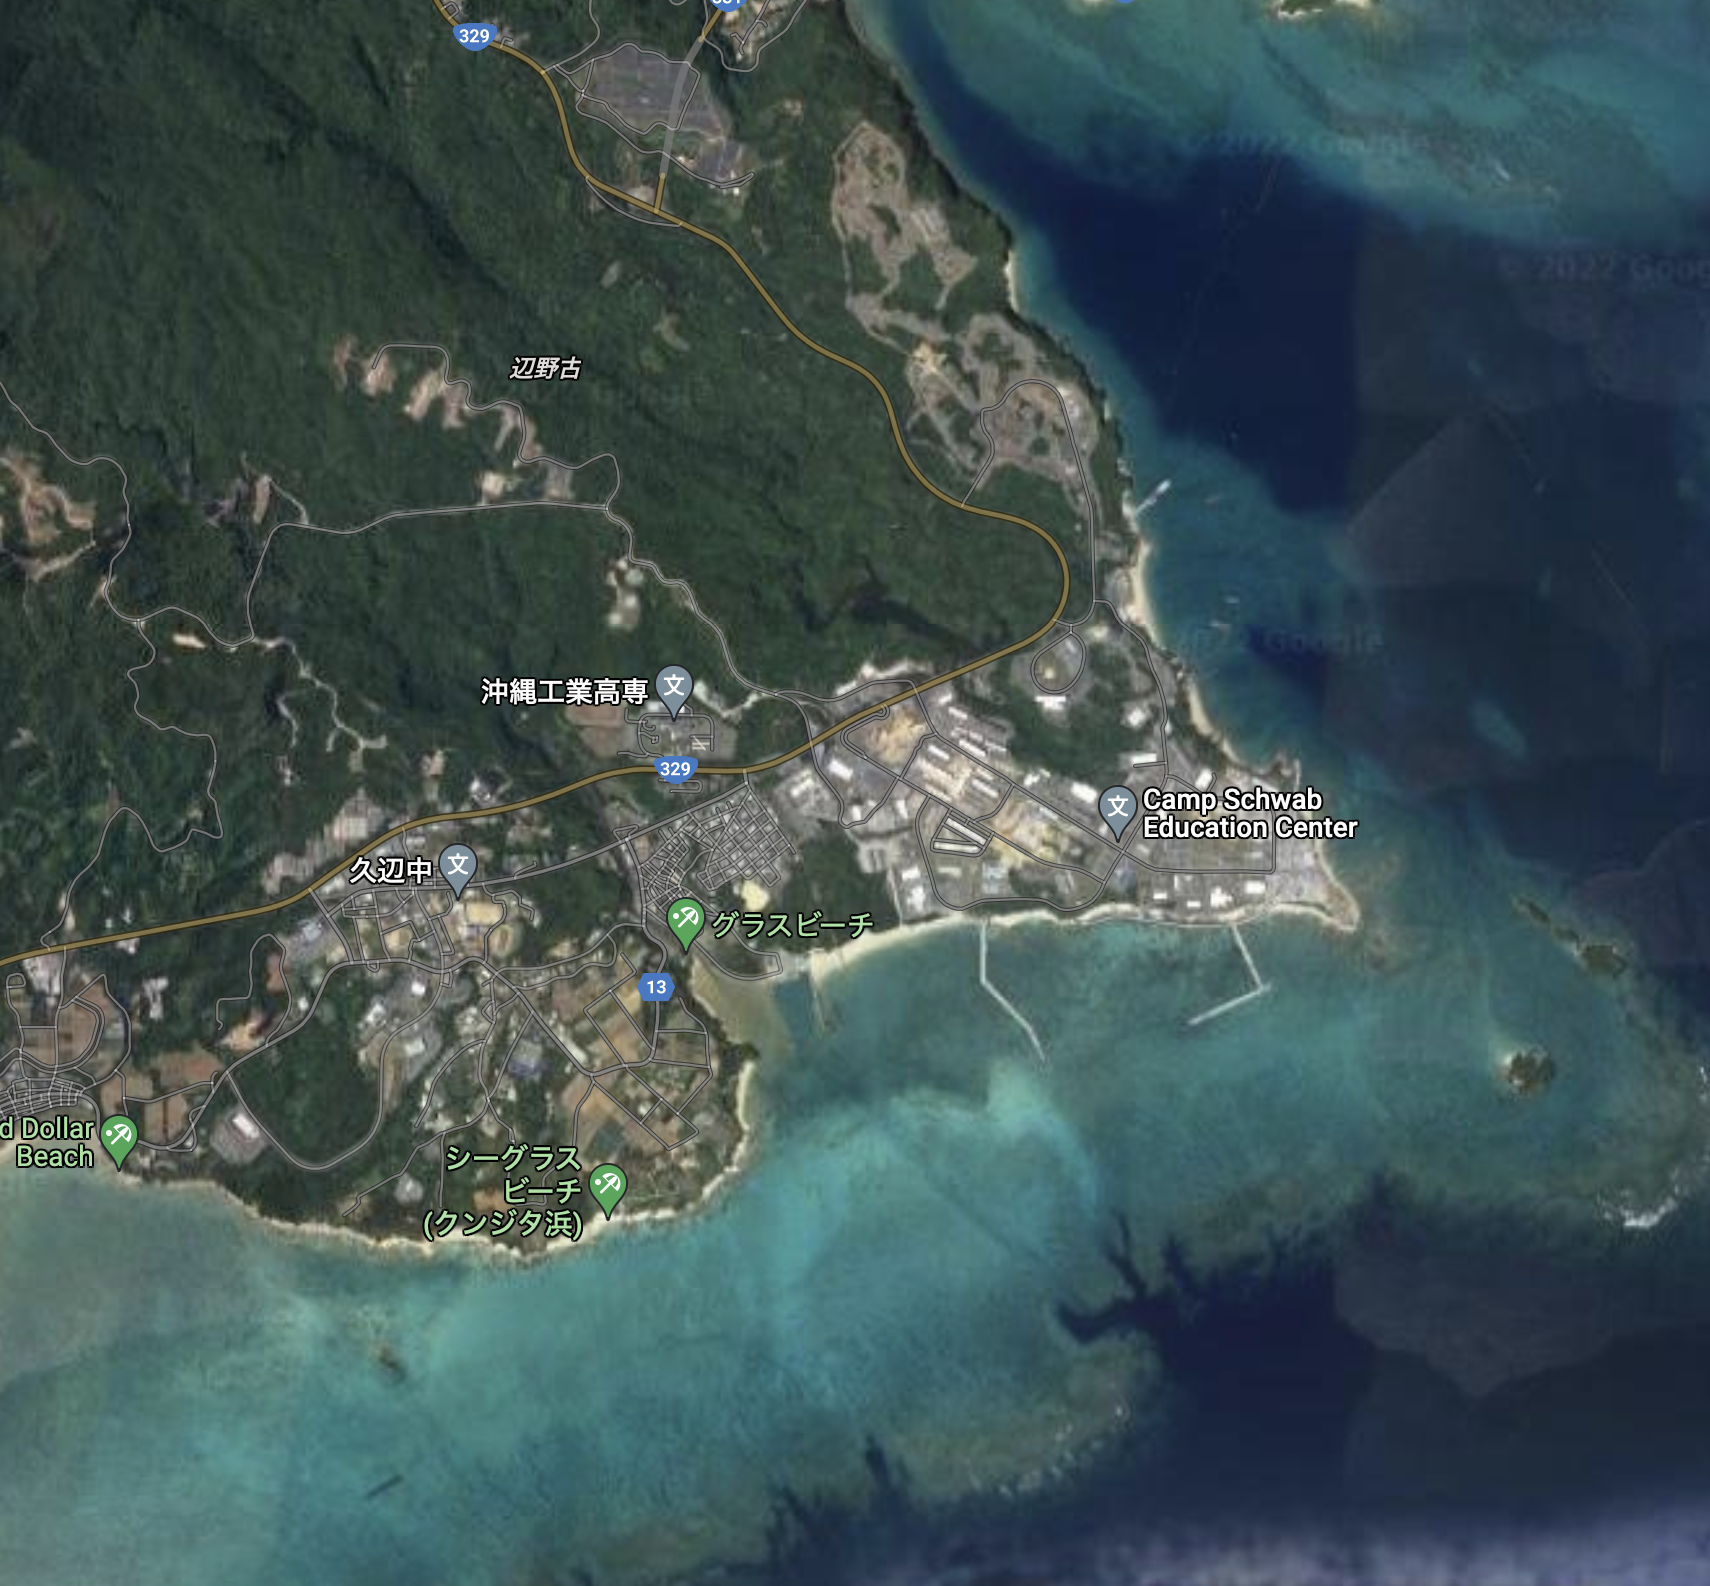 松野博一官房長官「新基地」と発言。こいつ沖縄に興味がない輩！なぜ「新基地」と言うのか？